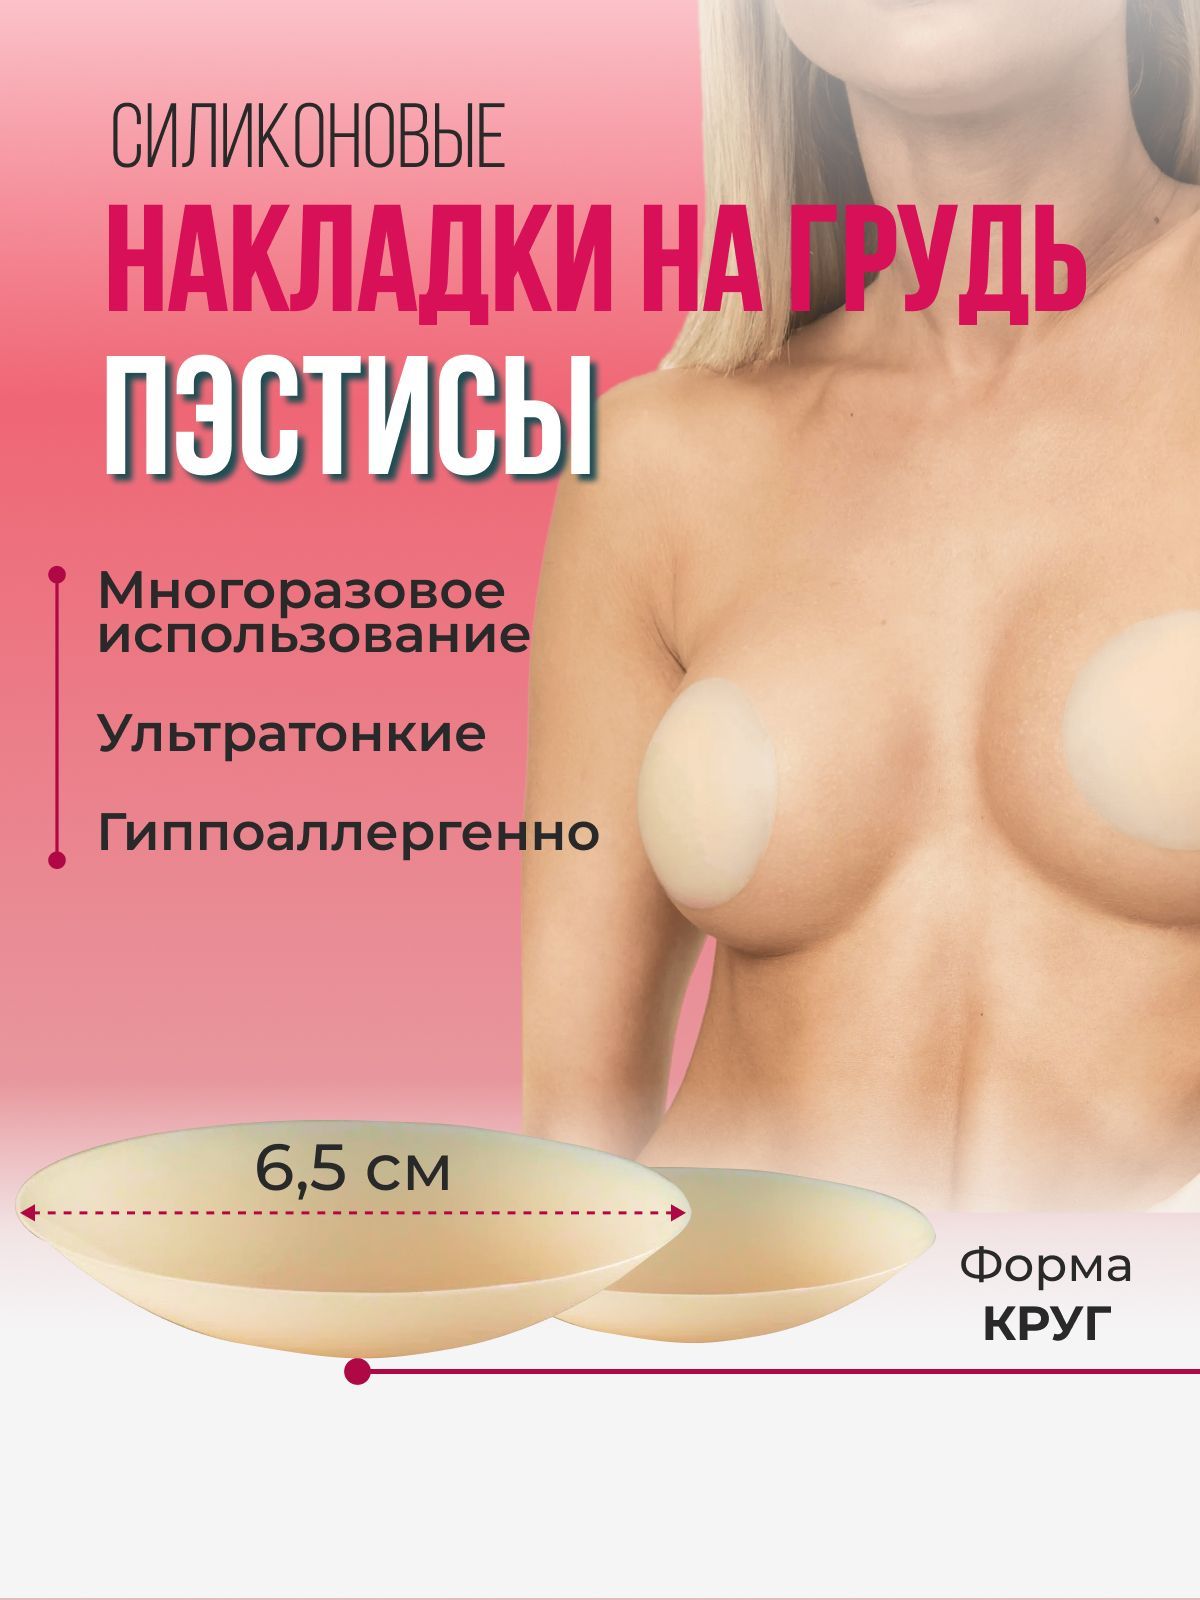 Как меняется женская грудь. Особенности и факторы влияния